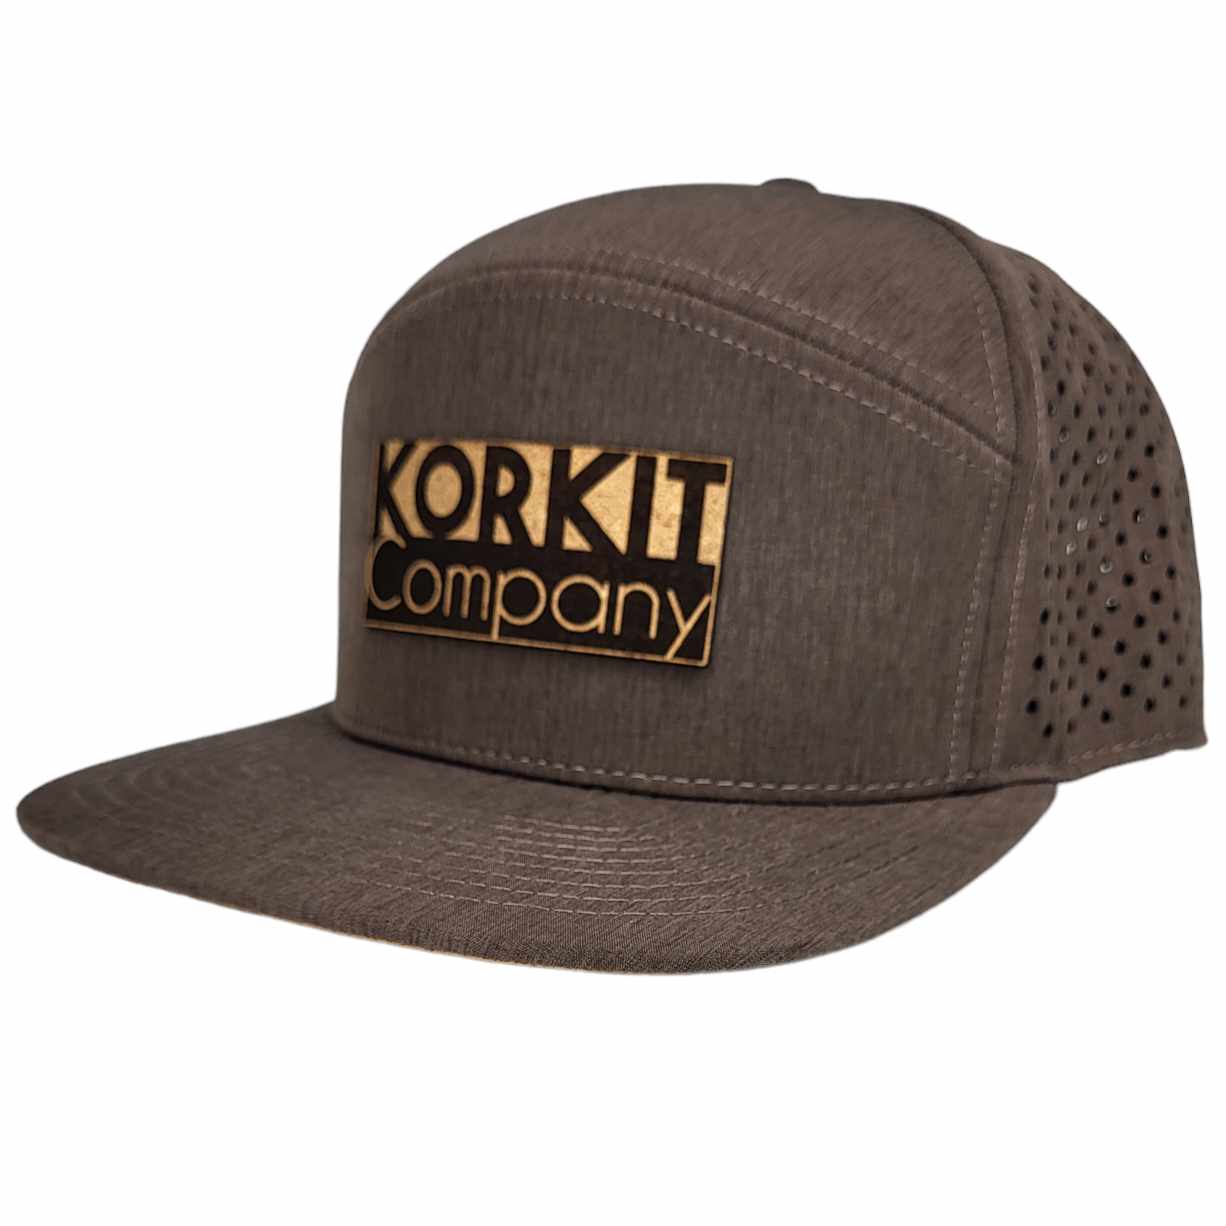 KORKIT Company Brand Hat